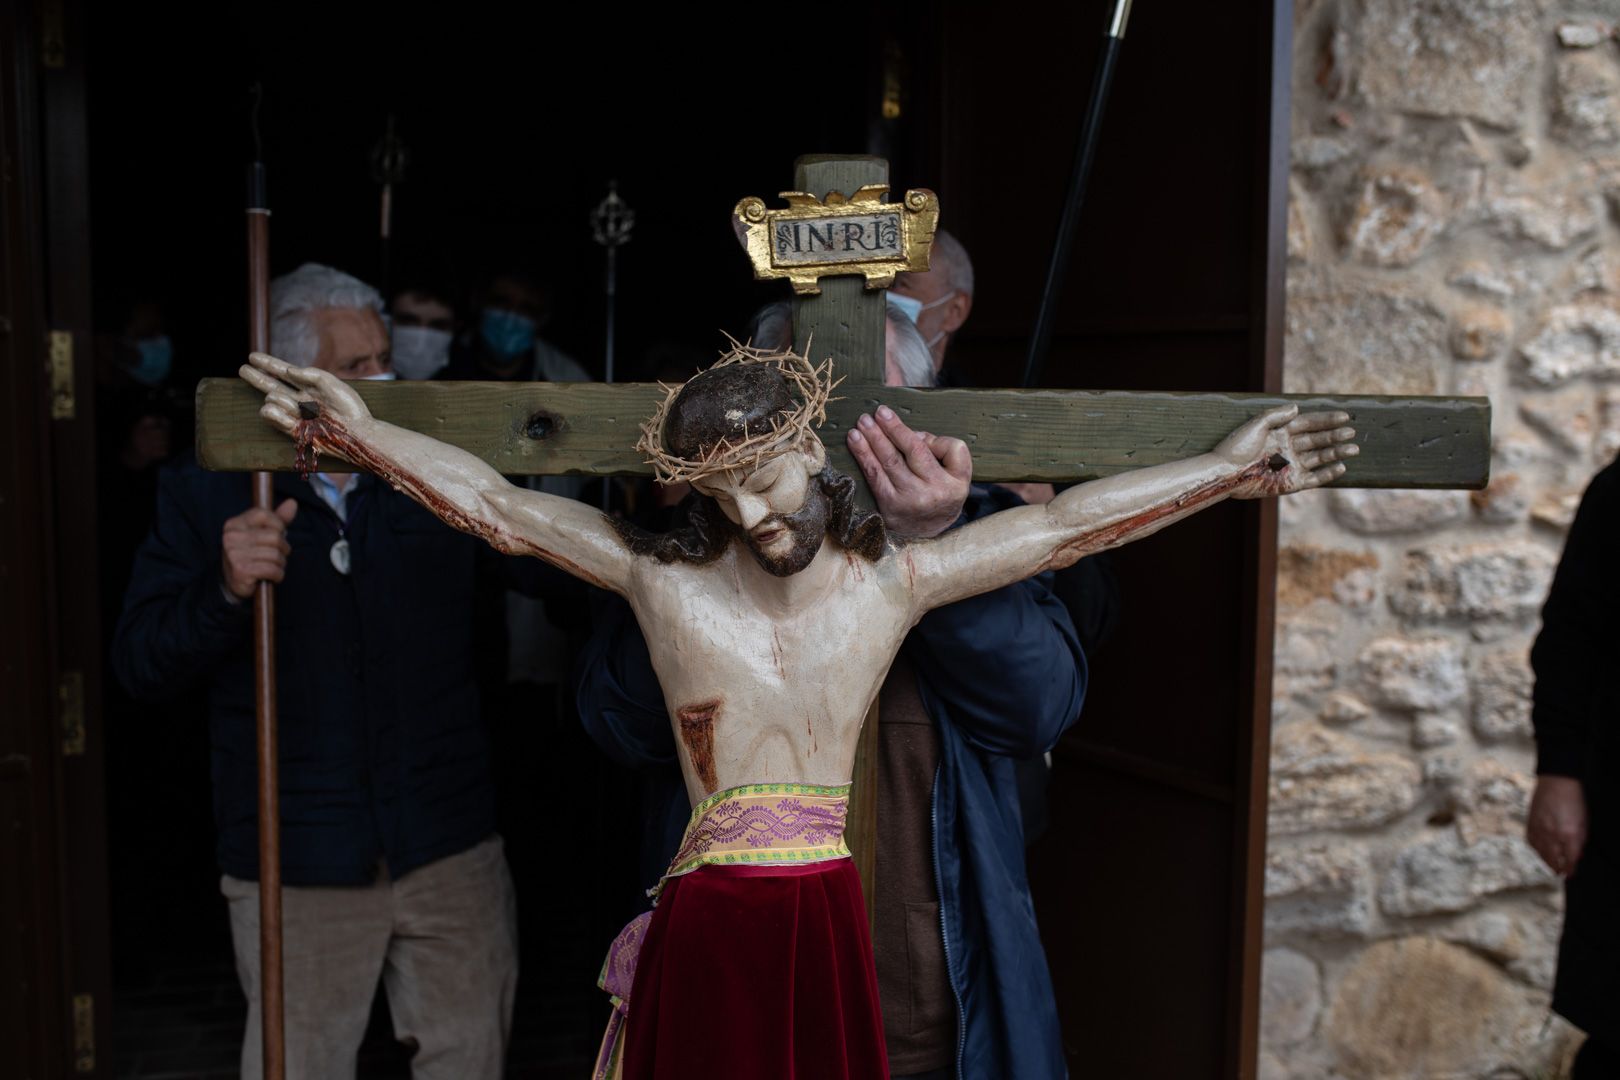 GALERÍA | La romería del Cristo de Valderrey, en imágenes